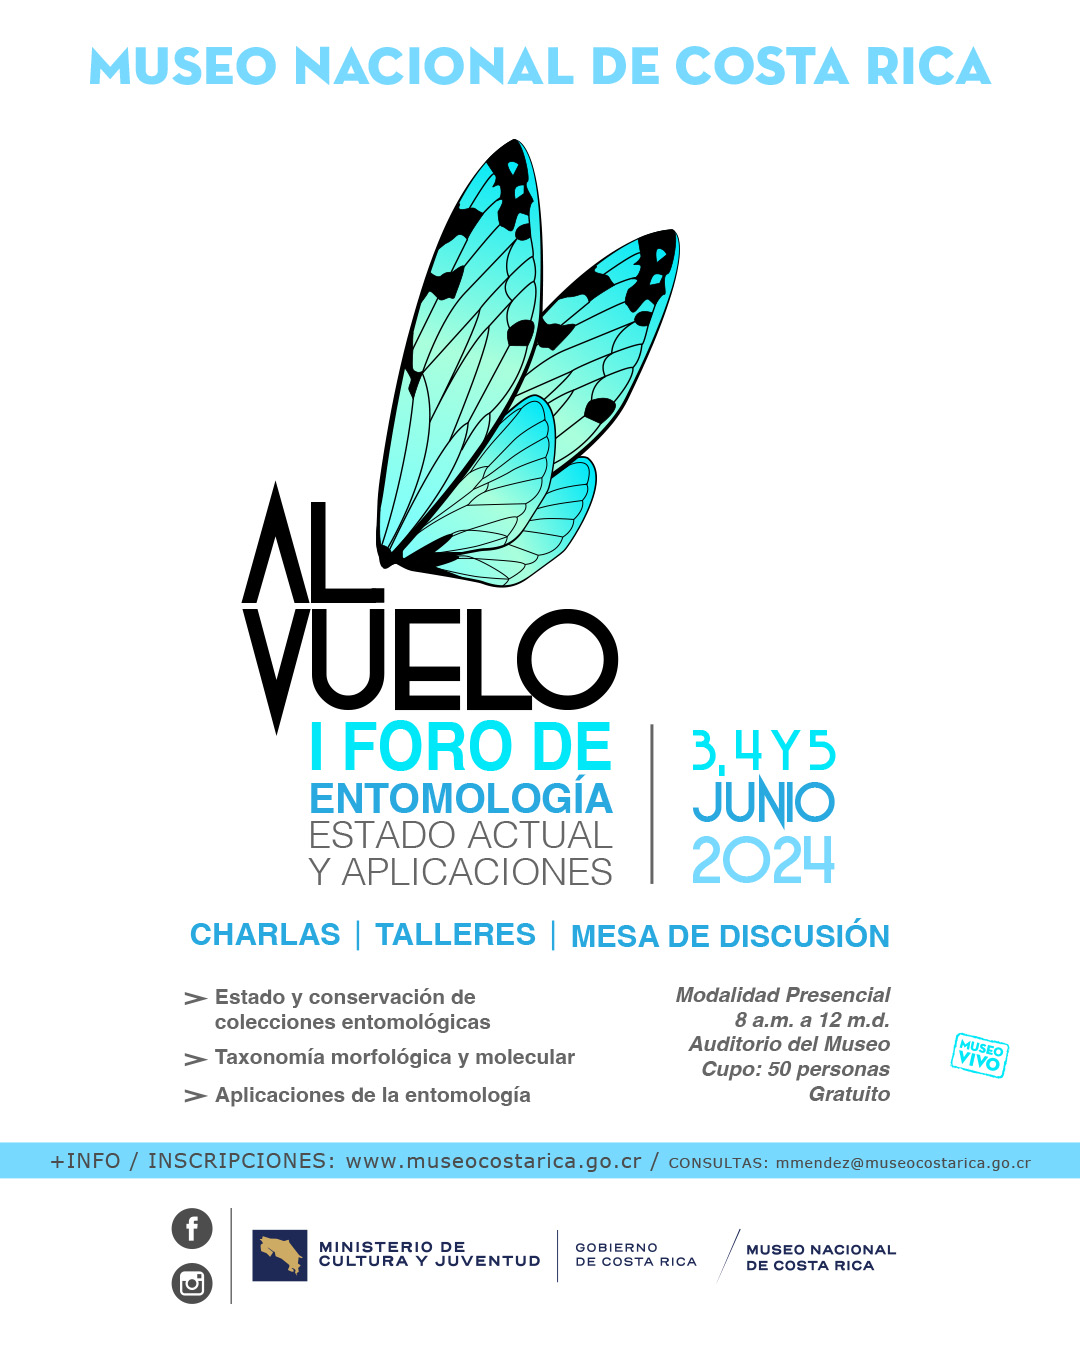 I Foro de Entomología - 3, 4 y 5 Junio 2024 - Museo Nacional de Costa Rica